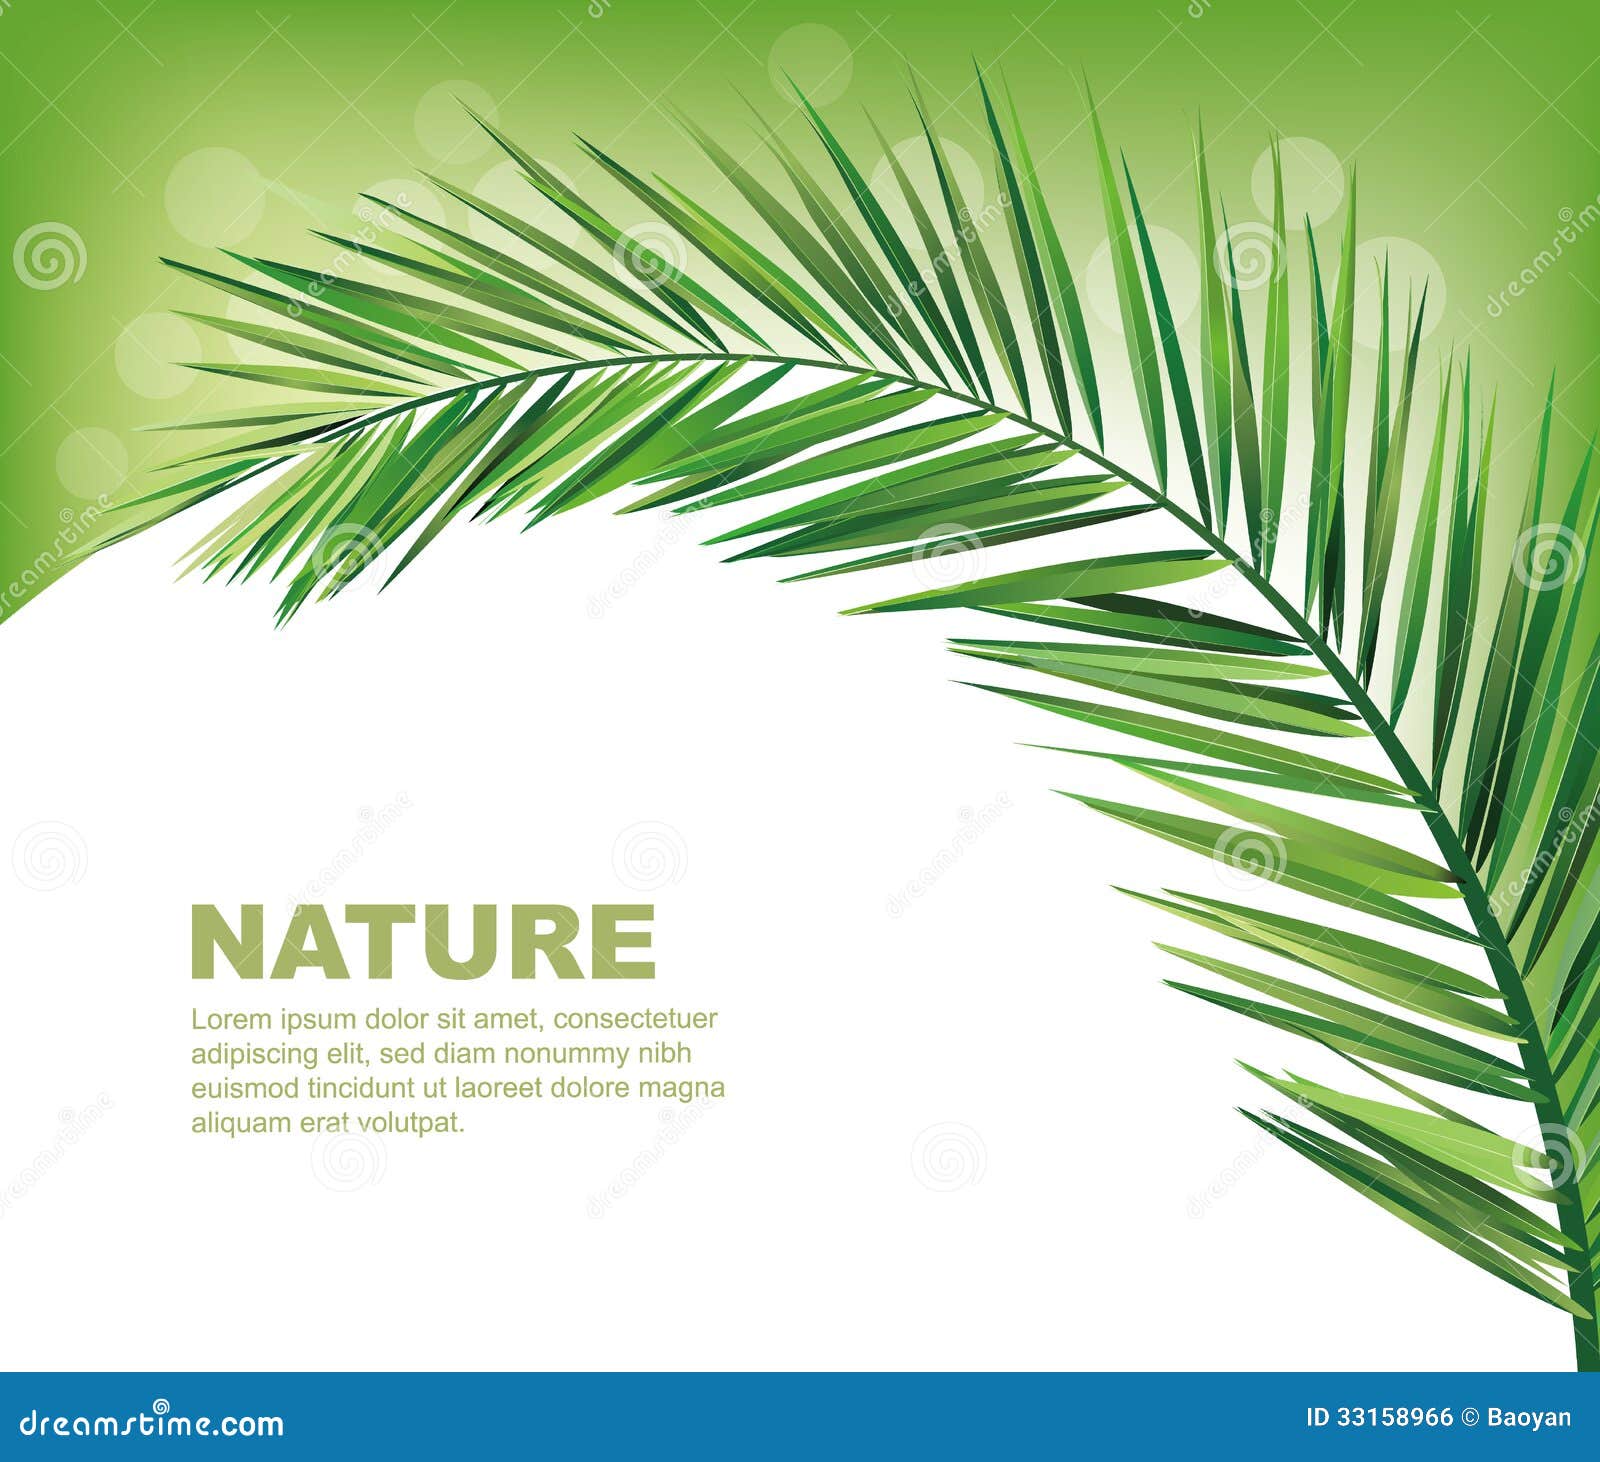 Lá dừa mang lại một vẻ đẹp tự nhiên và gợi nhớ đến những chuyến phiêu lưu trên bãi biển. Xem các hình ảnh liên quan đến lá dừa để tận hưởng không khí nhiệt đới của mùa hè.